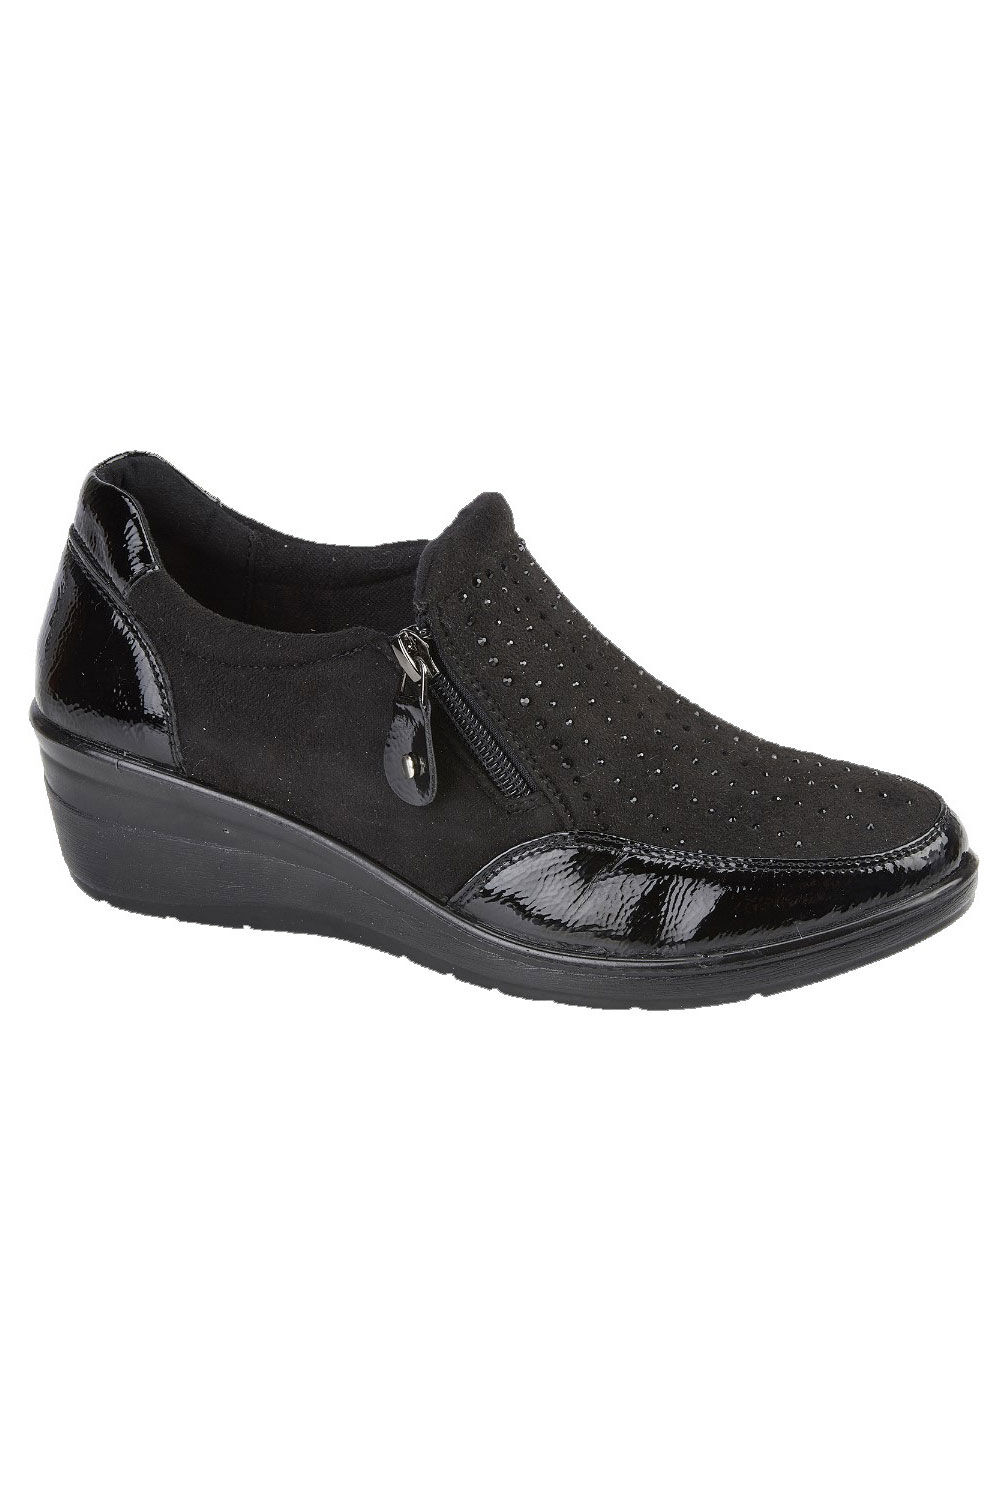 Jo & Joe Black - Diamante Wedge Heel Ankle Boots, Size: 6